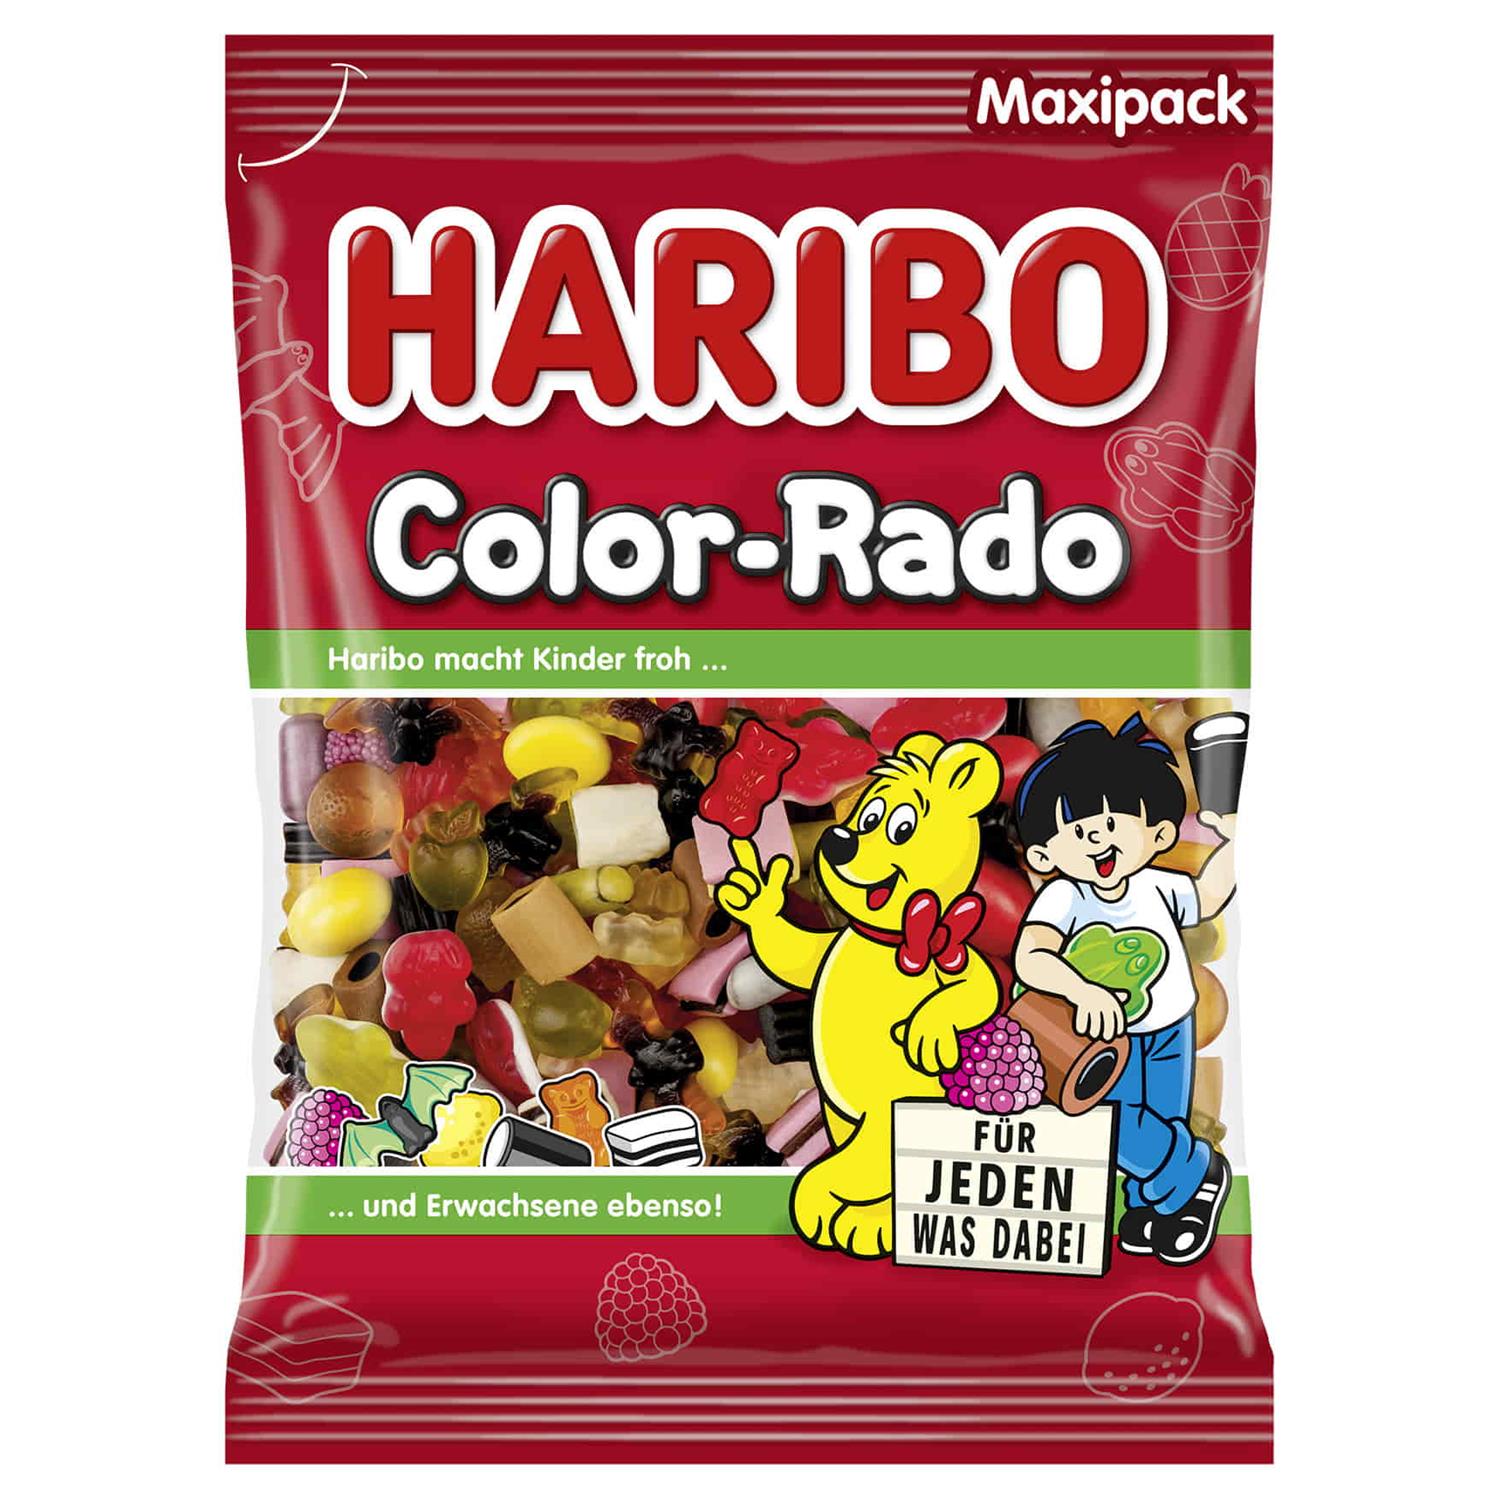 udsende ønskelig hævn Haribo Color-rado 1 kg - Grænsehandel til billige priser